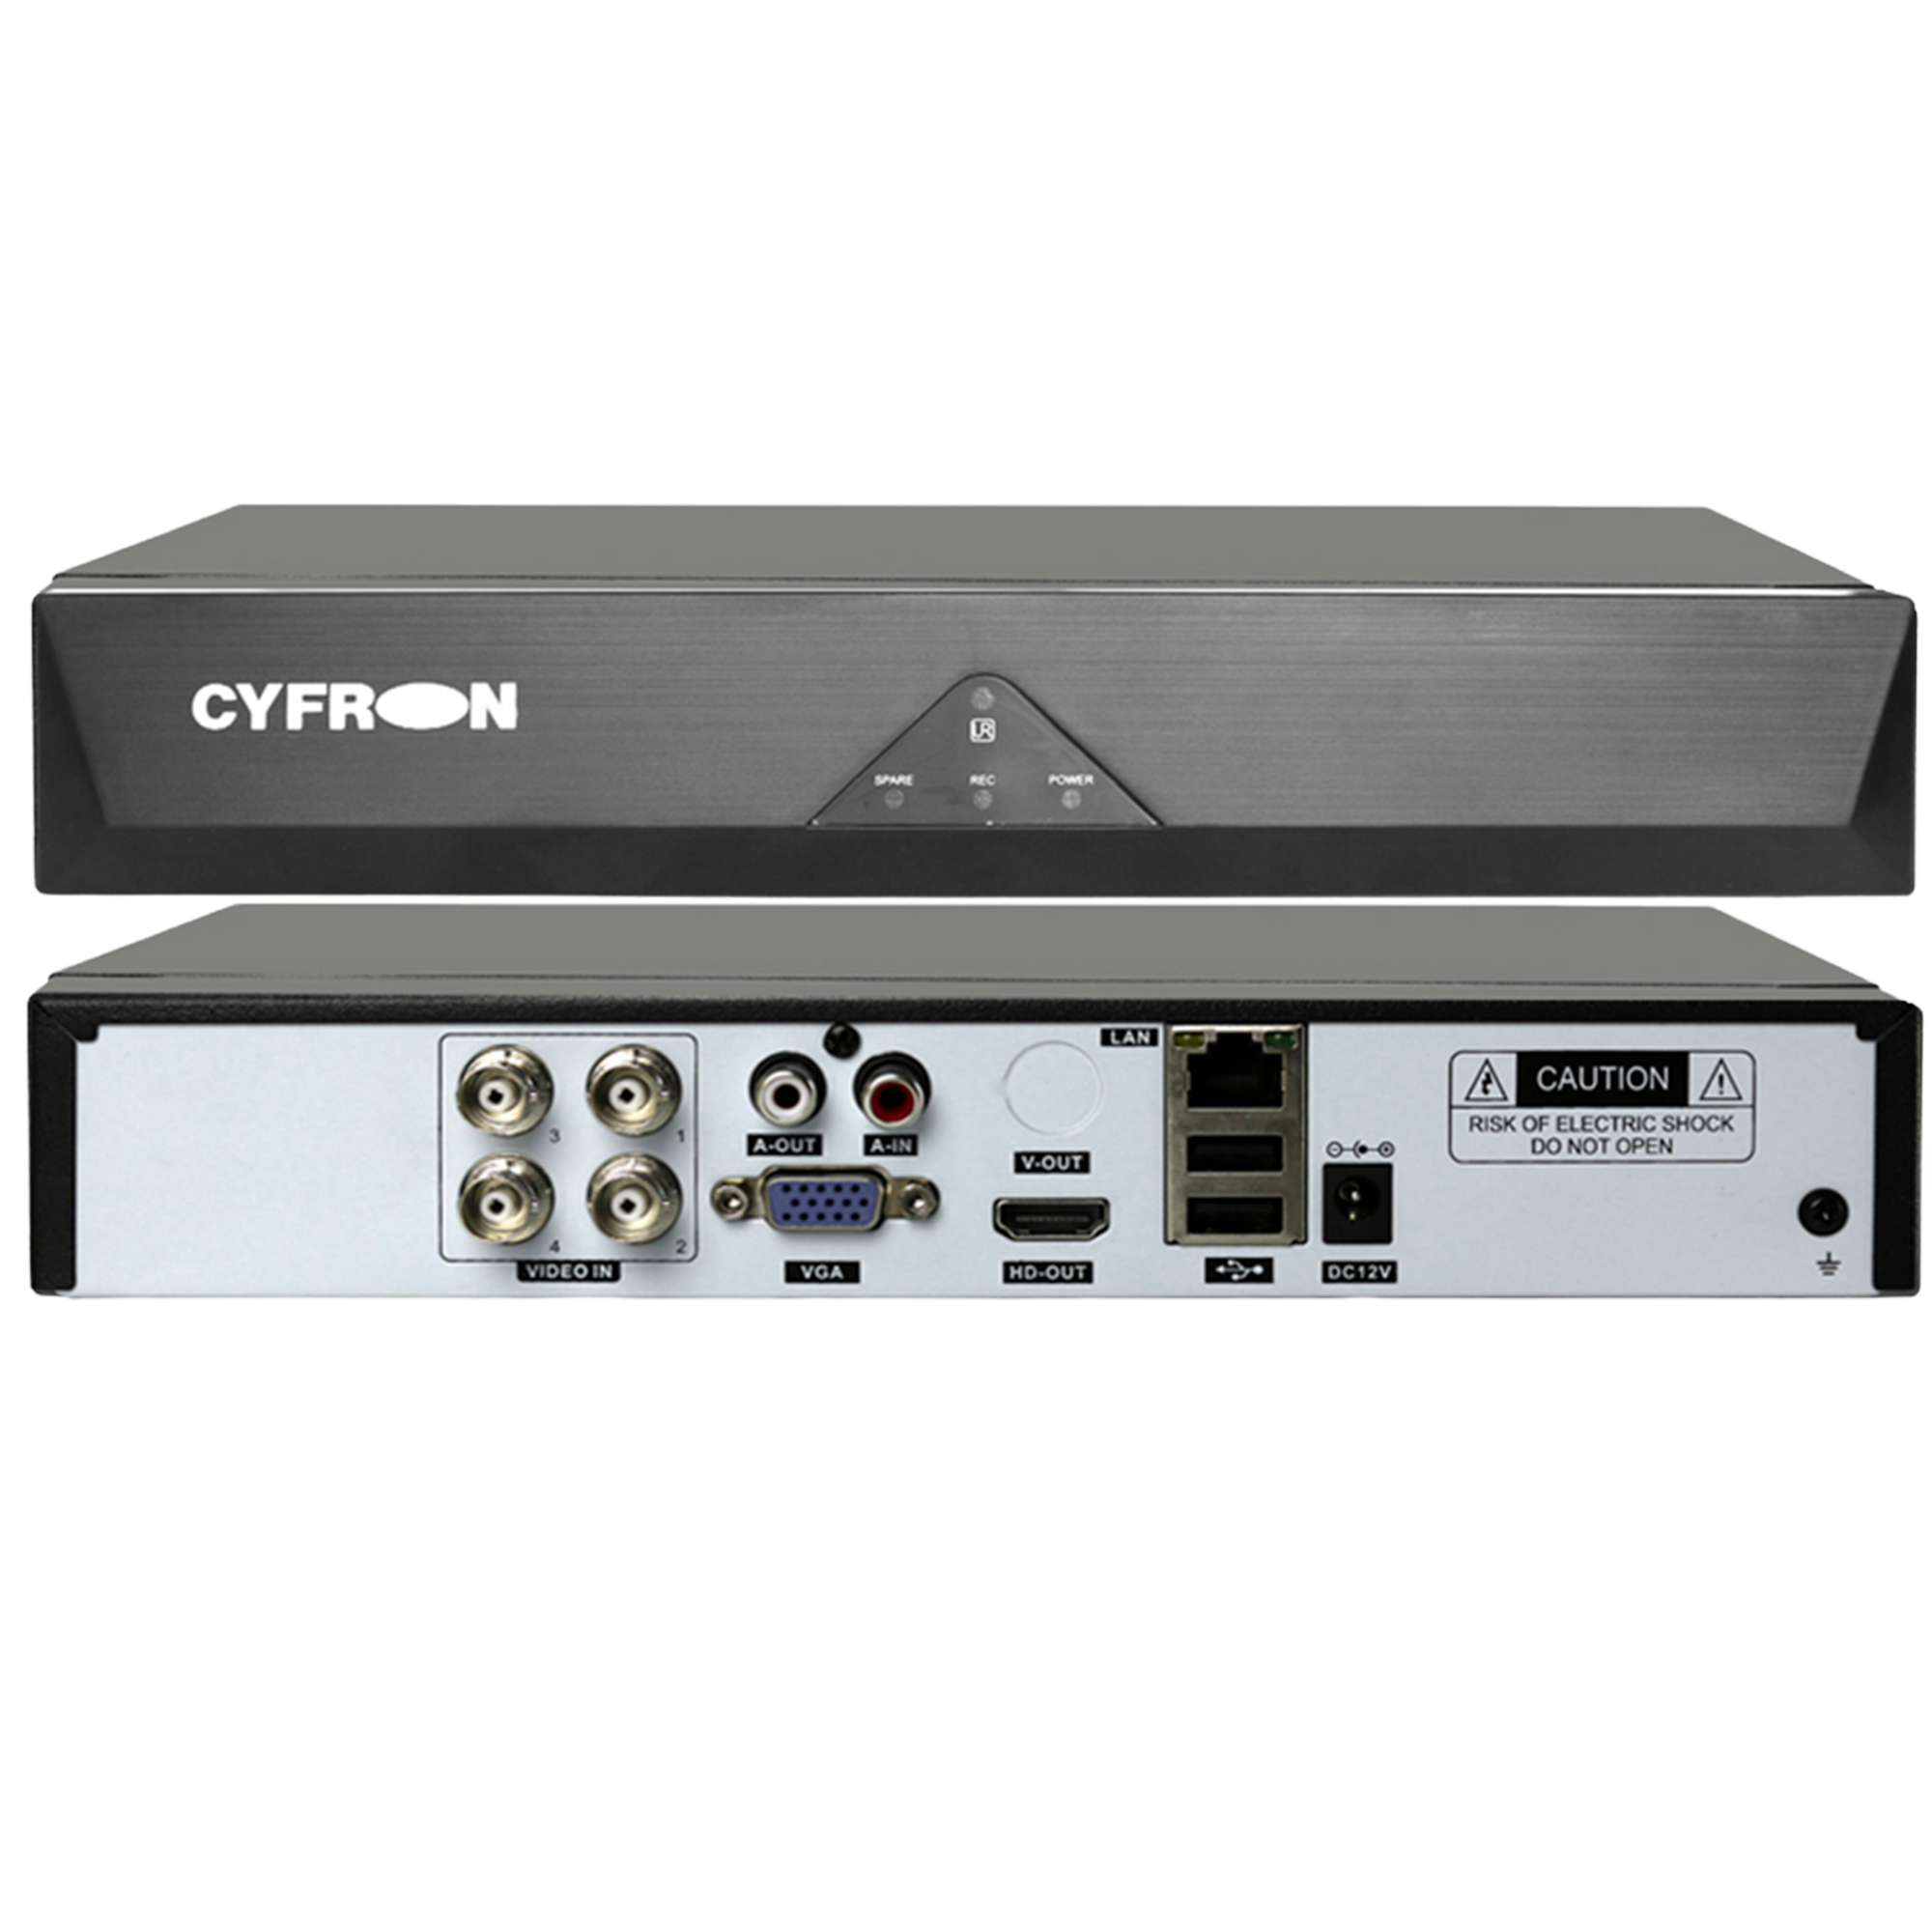 Гибридный видеорегистратор Cyfron DV464ATH, 5Мп-N, 4 видео, 1 звук, 1 HDD